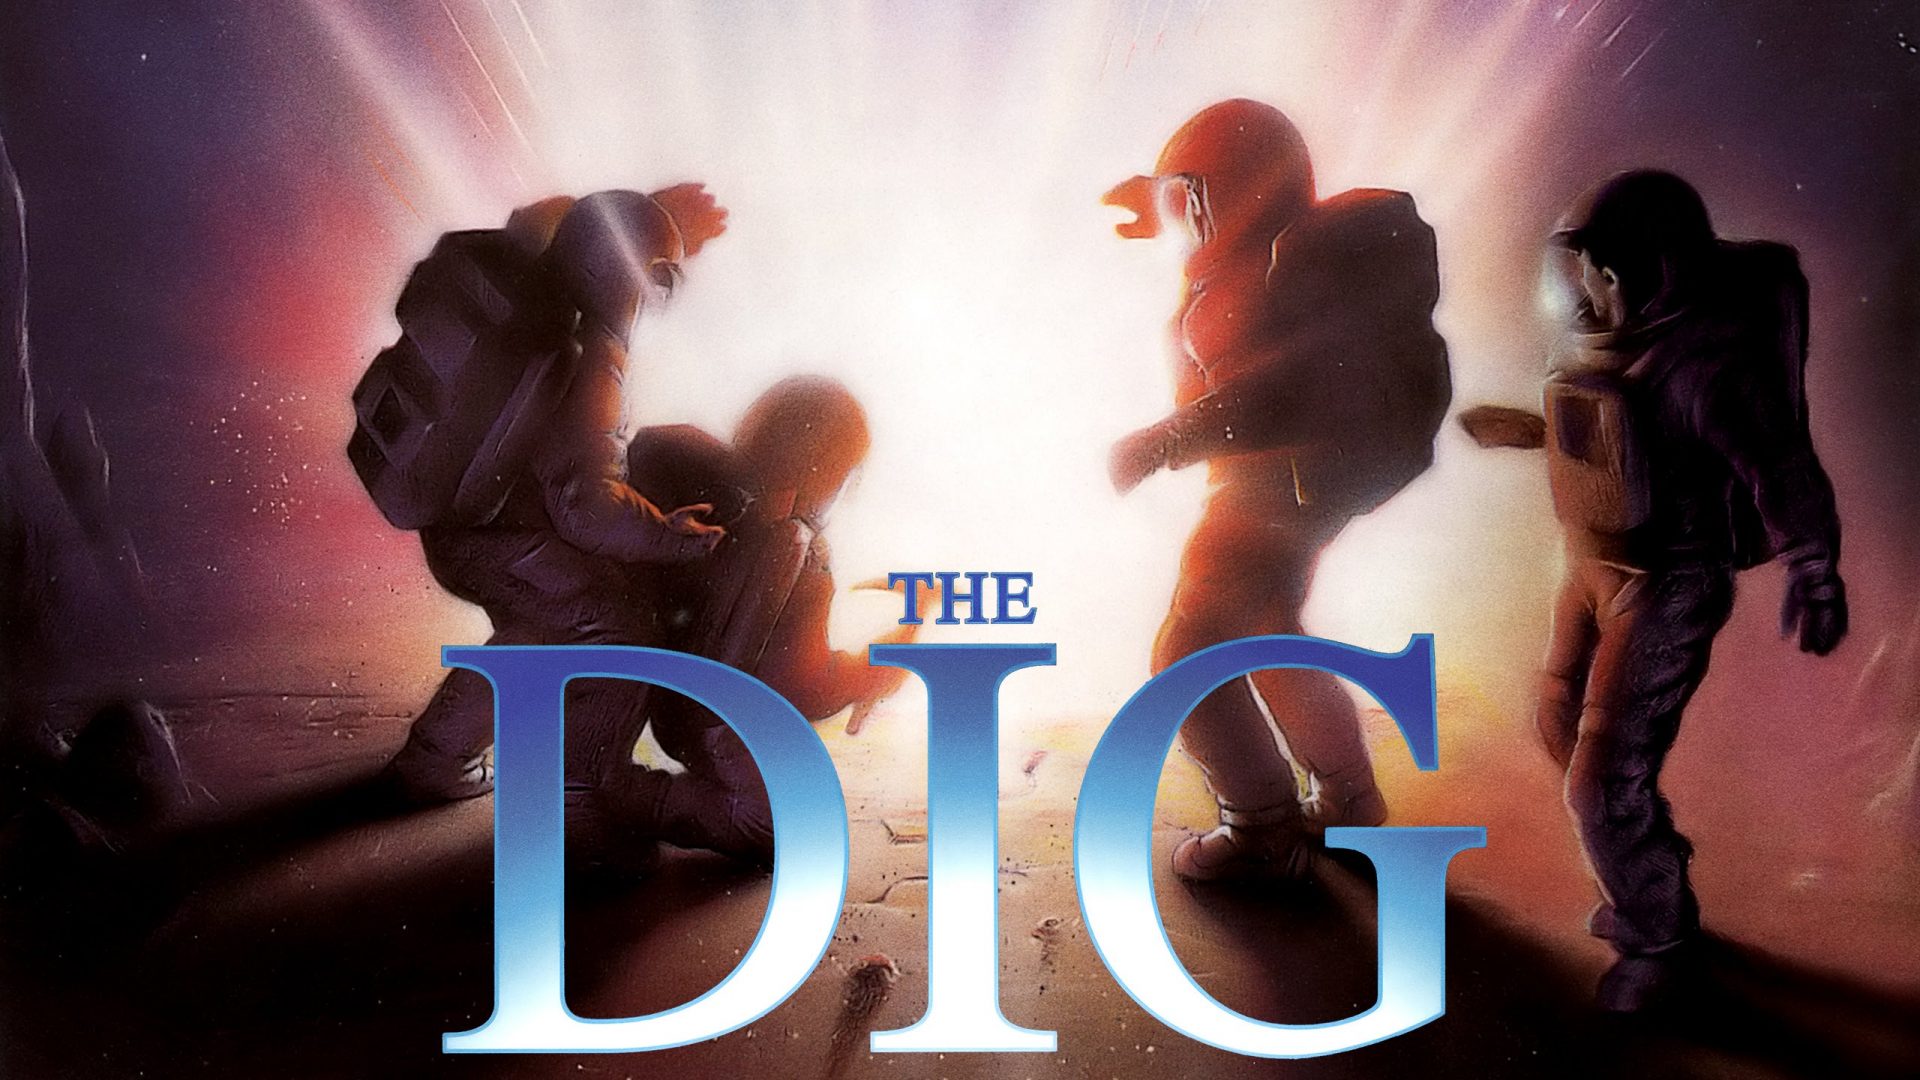 طرح جلد بازی The Dig با حضور فضانوردان